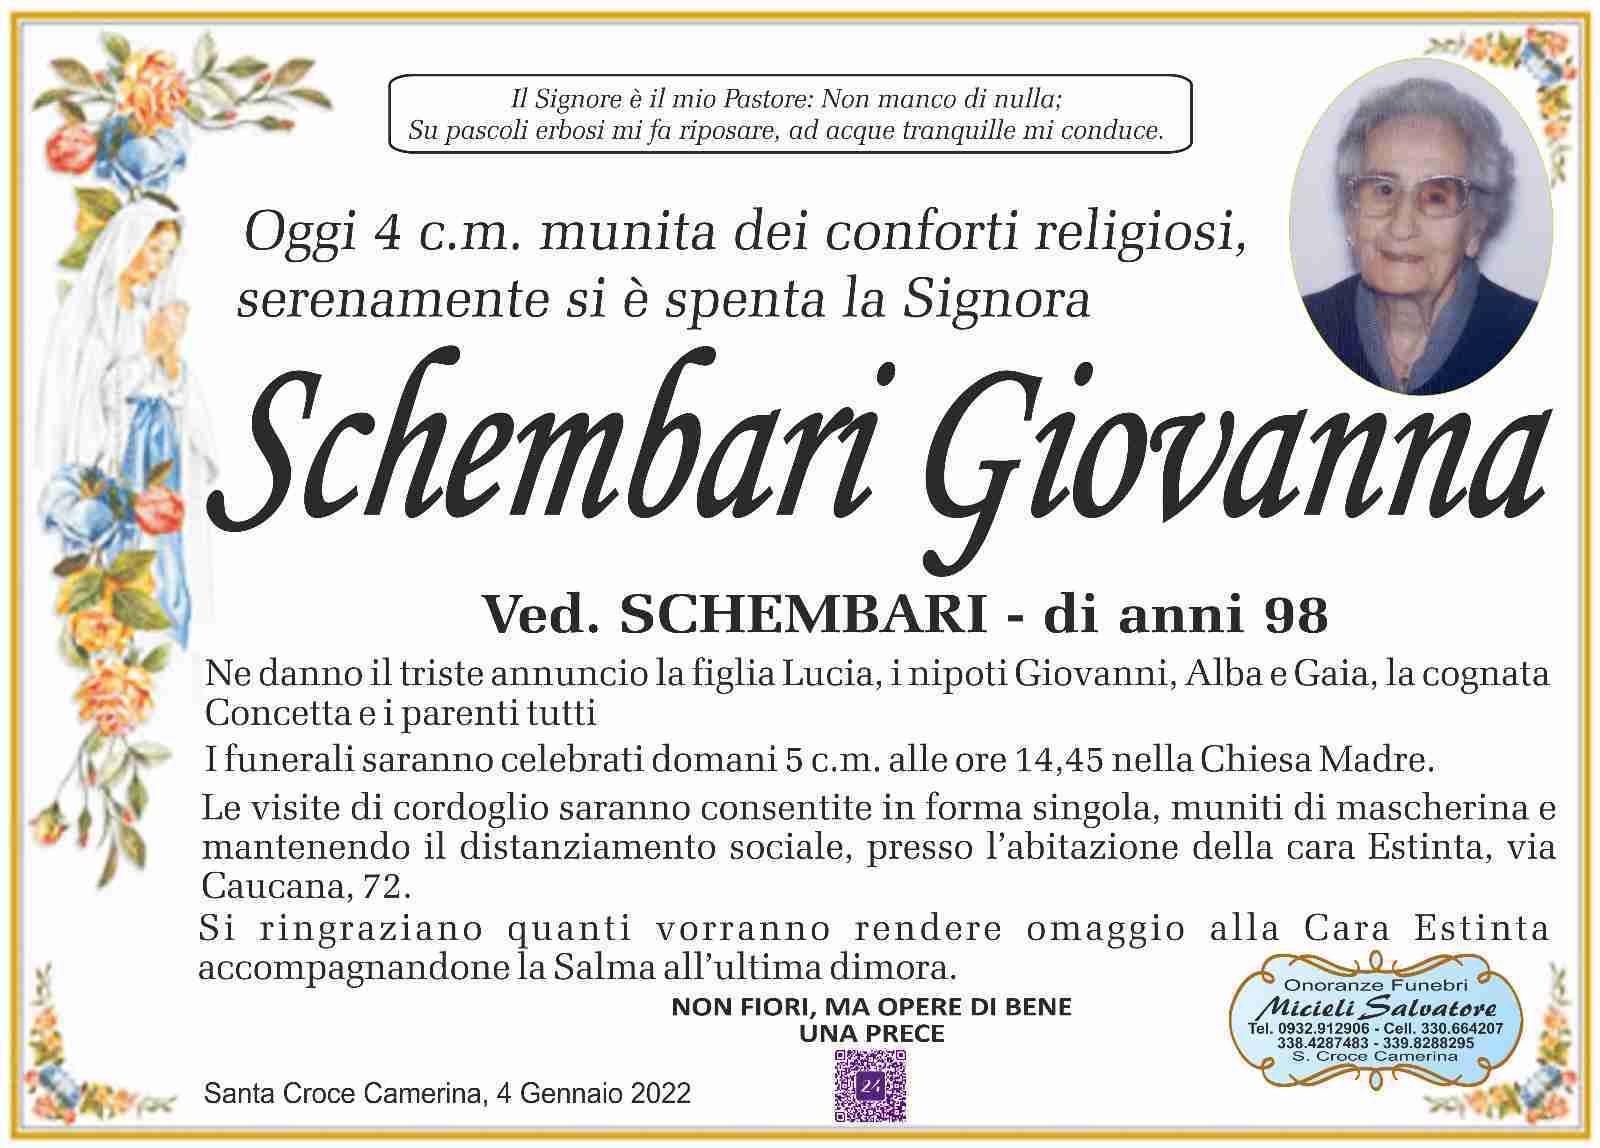 Giovanna Schembari